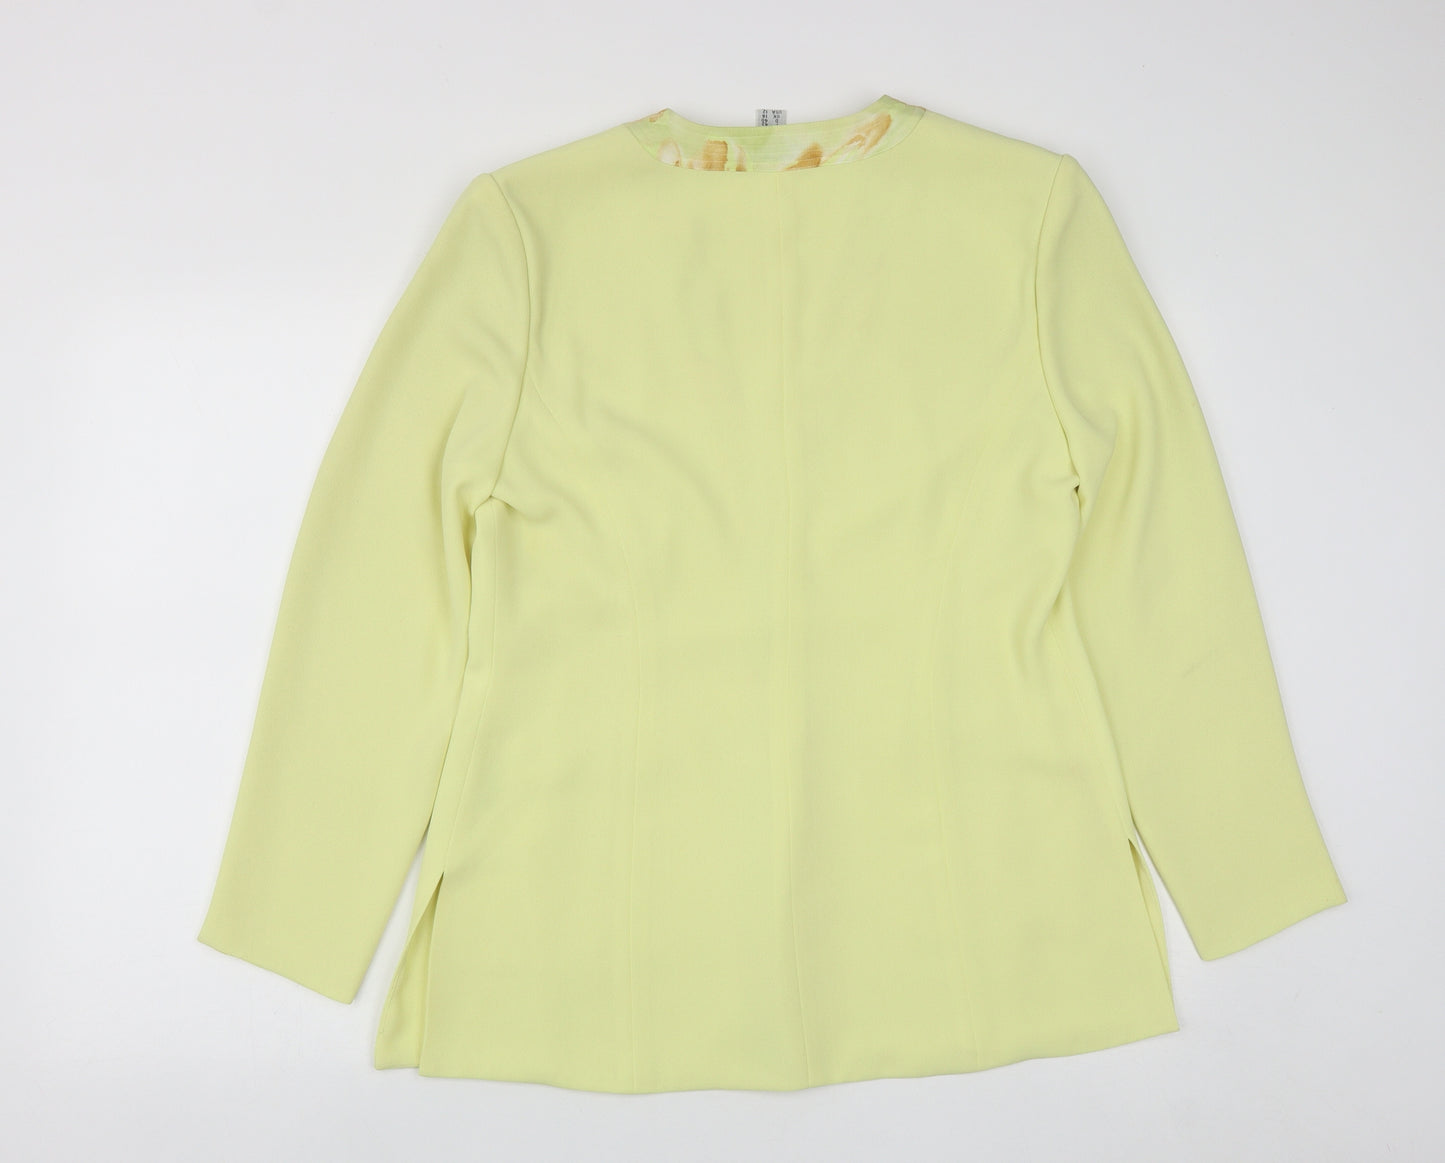 Gina Womens Yellow Geometric  Jacket  Size 12  Button